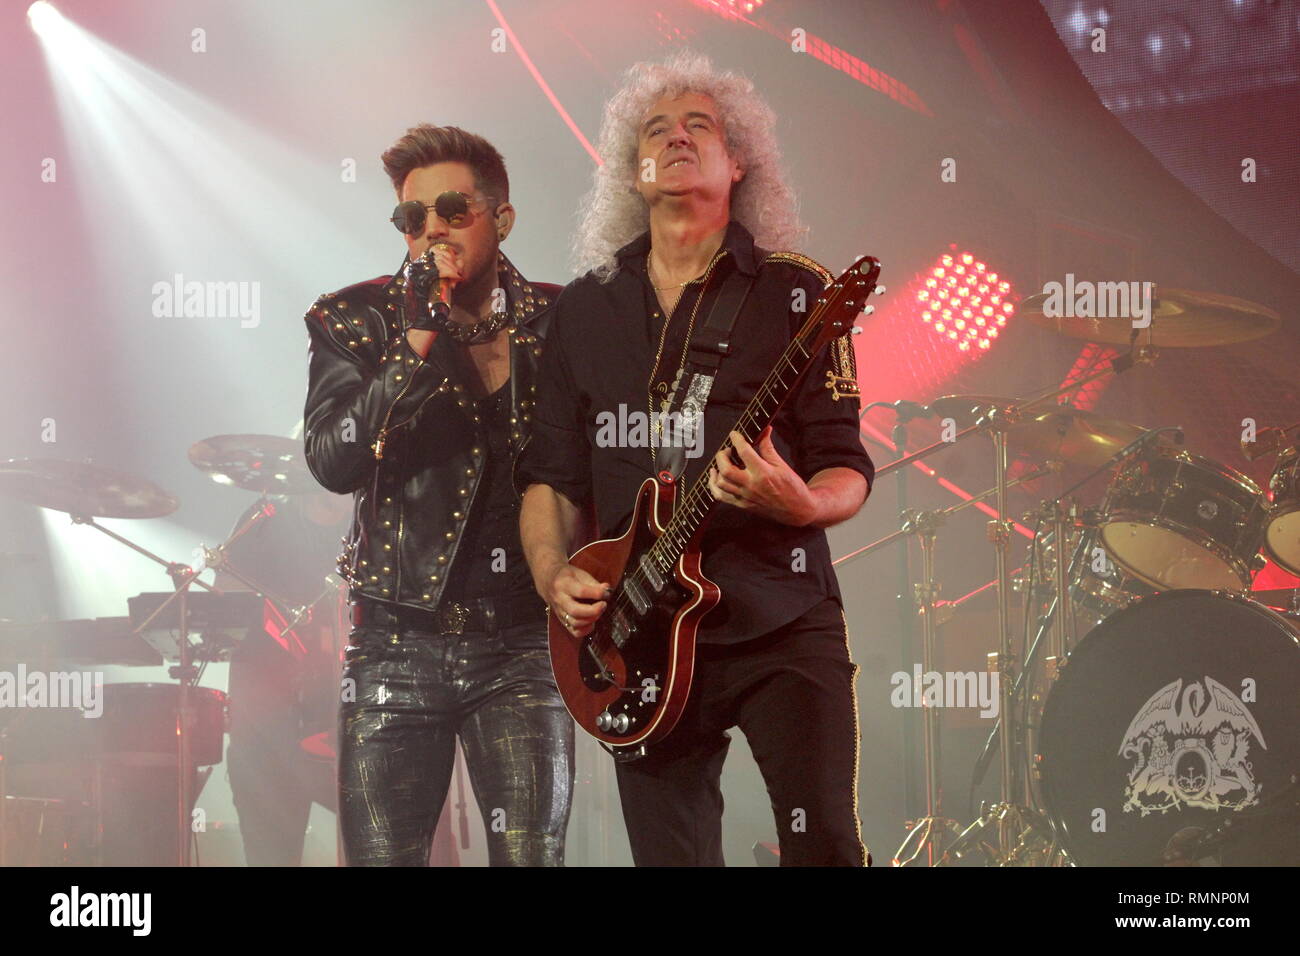 Il cantante Adam Lambert e il chitarrista Brian May della rock band Queen sono mostrati esibirsi sul palco durante un 'live' aspetto di concerto. Foto Stock